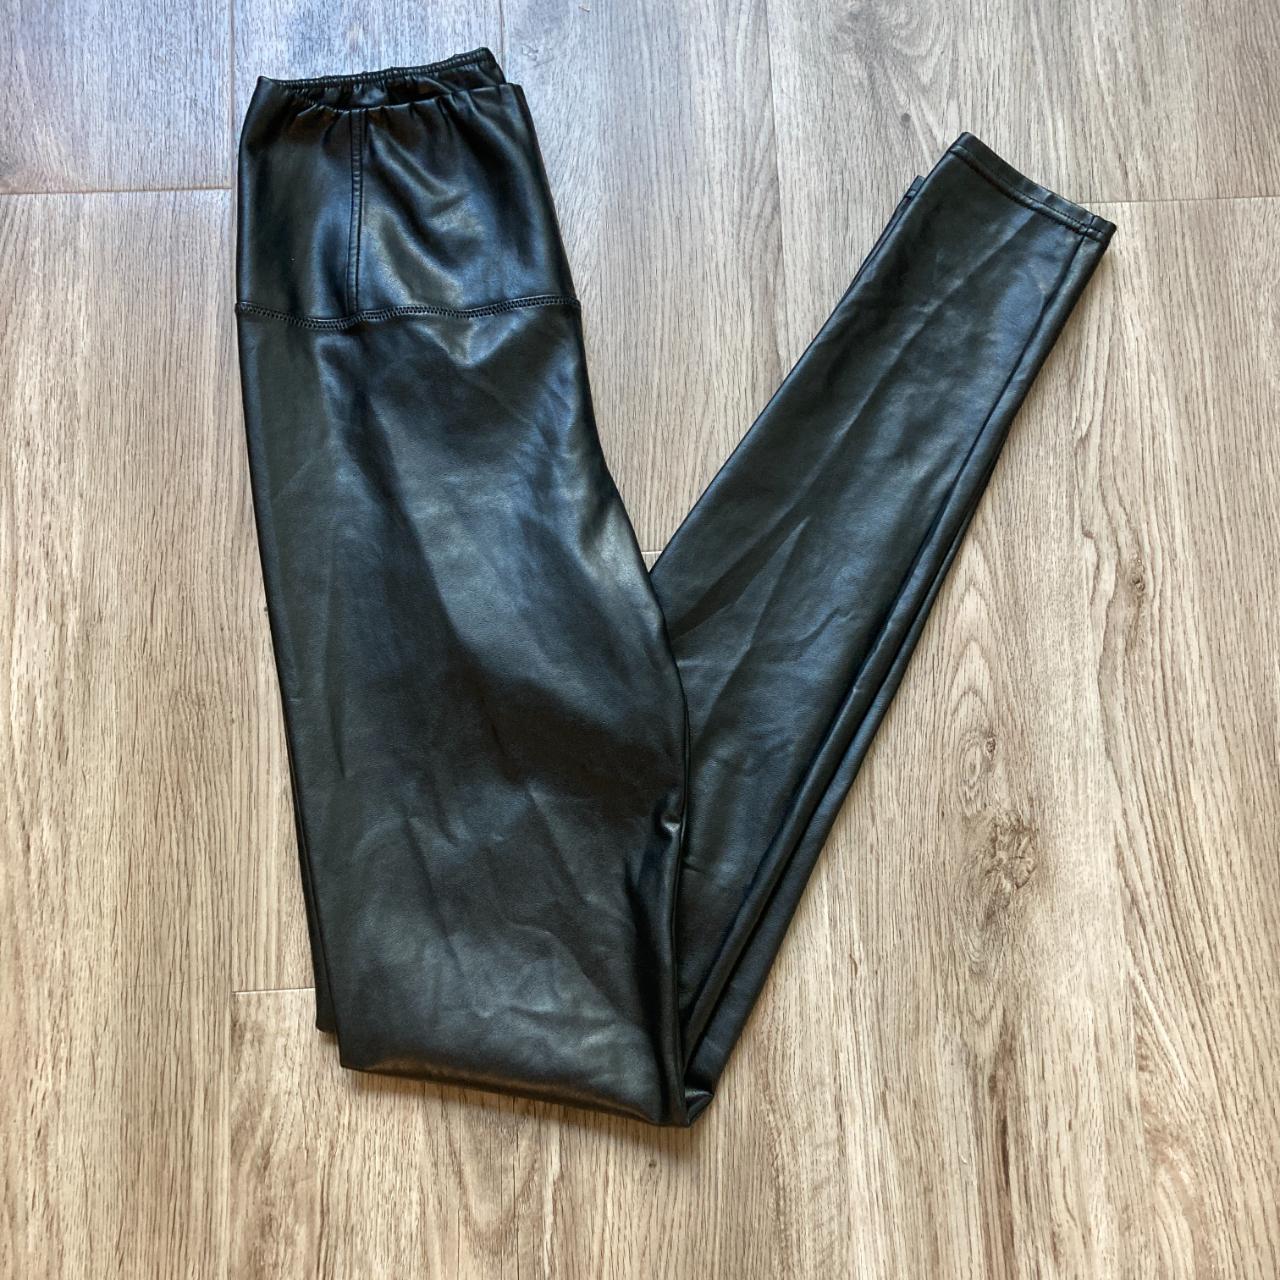 Wilfred Free Daria Pant Leggings Size Small Black Vegan Leather